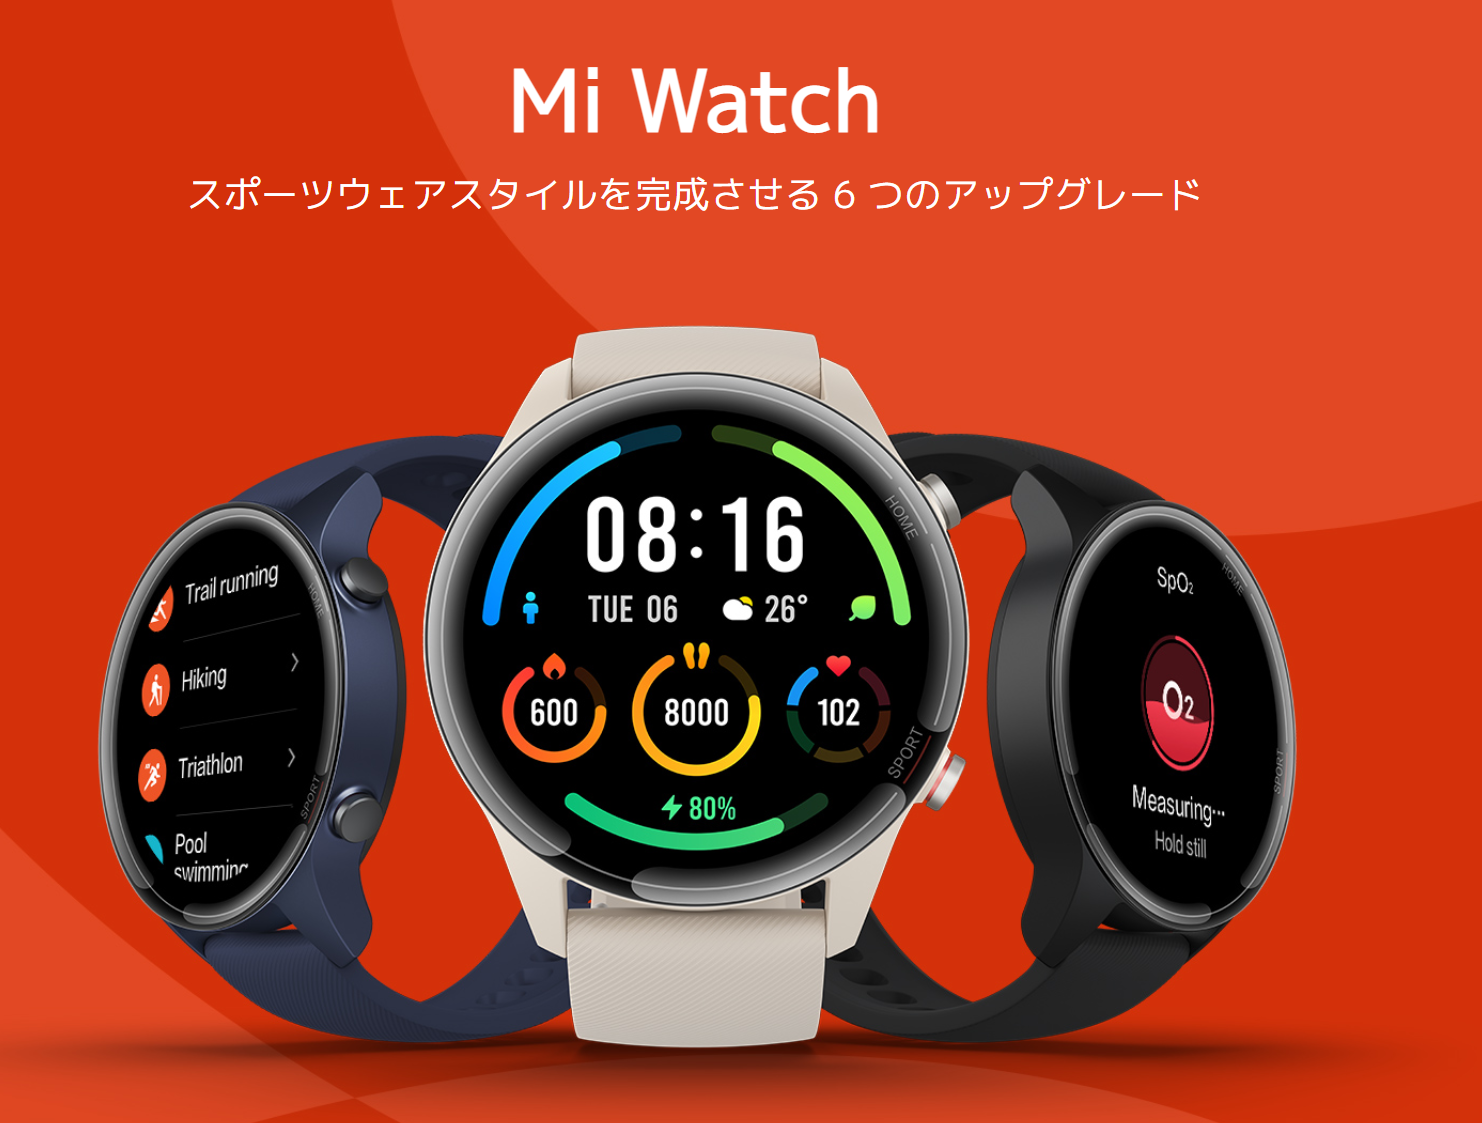 【Xiaomi】Mi Watch【スマートウォッチ】